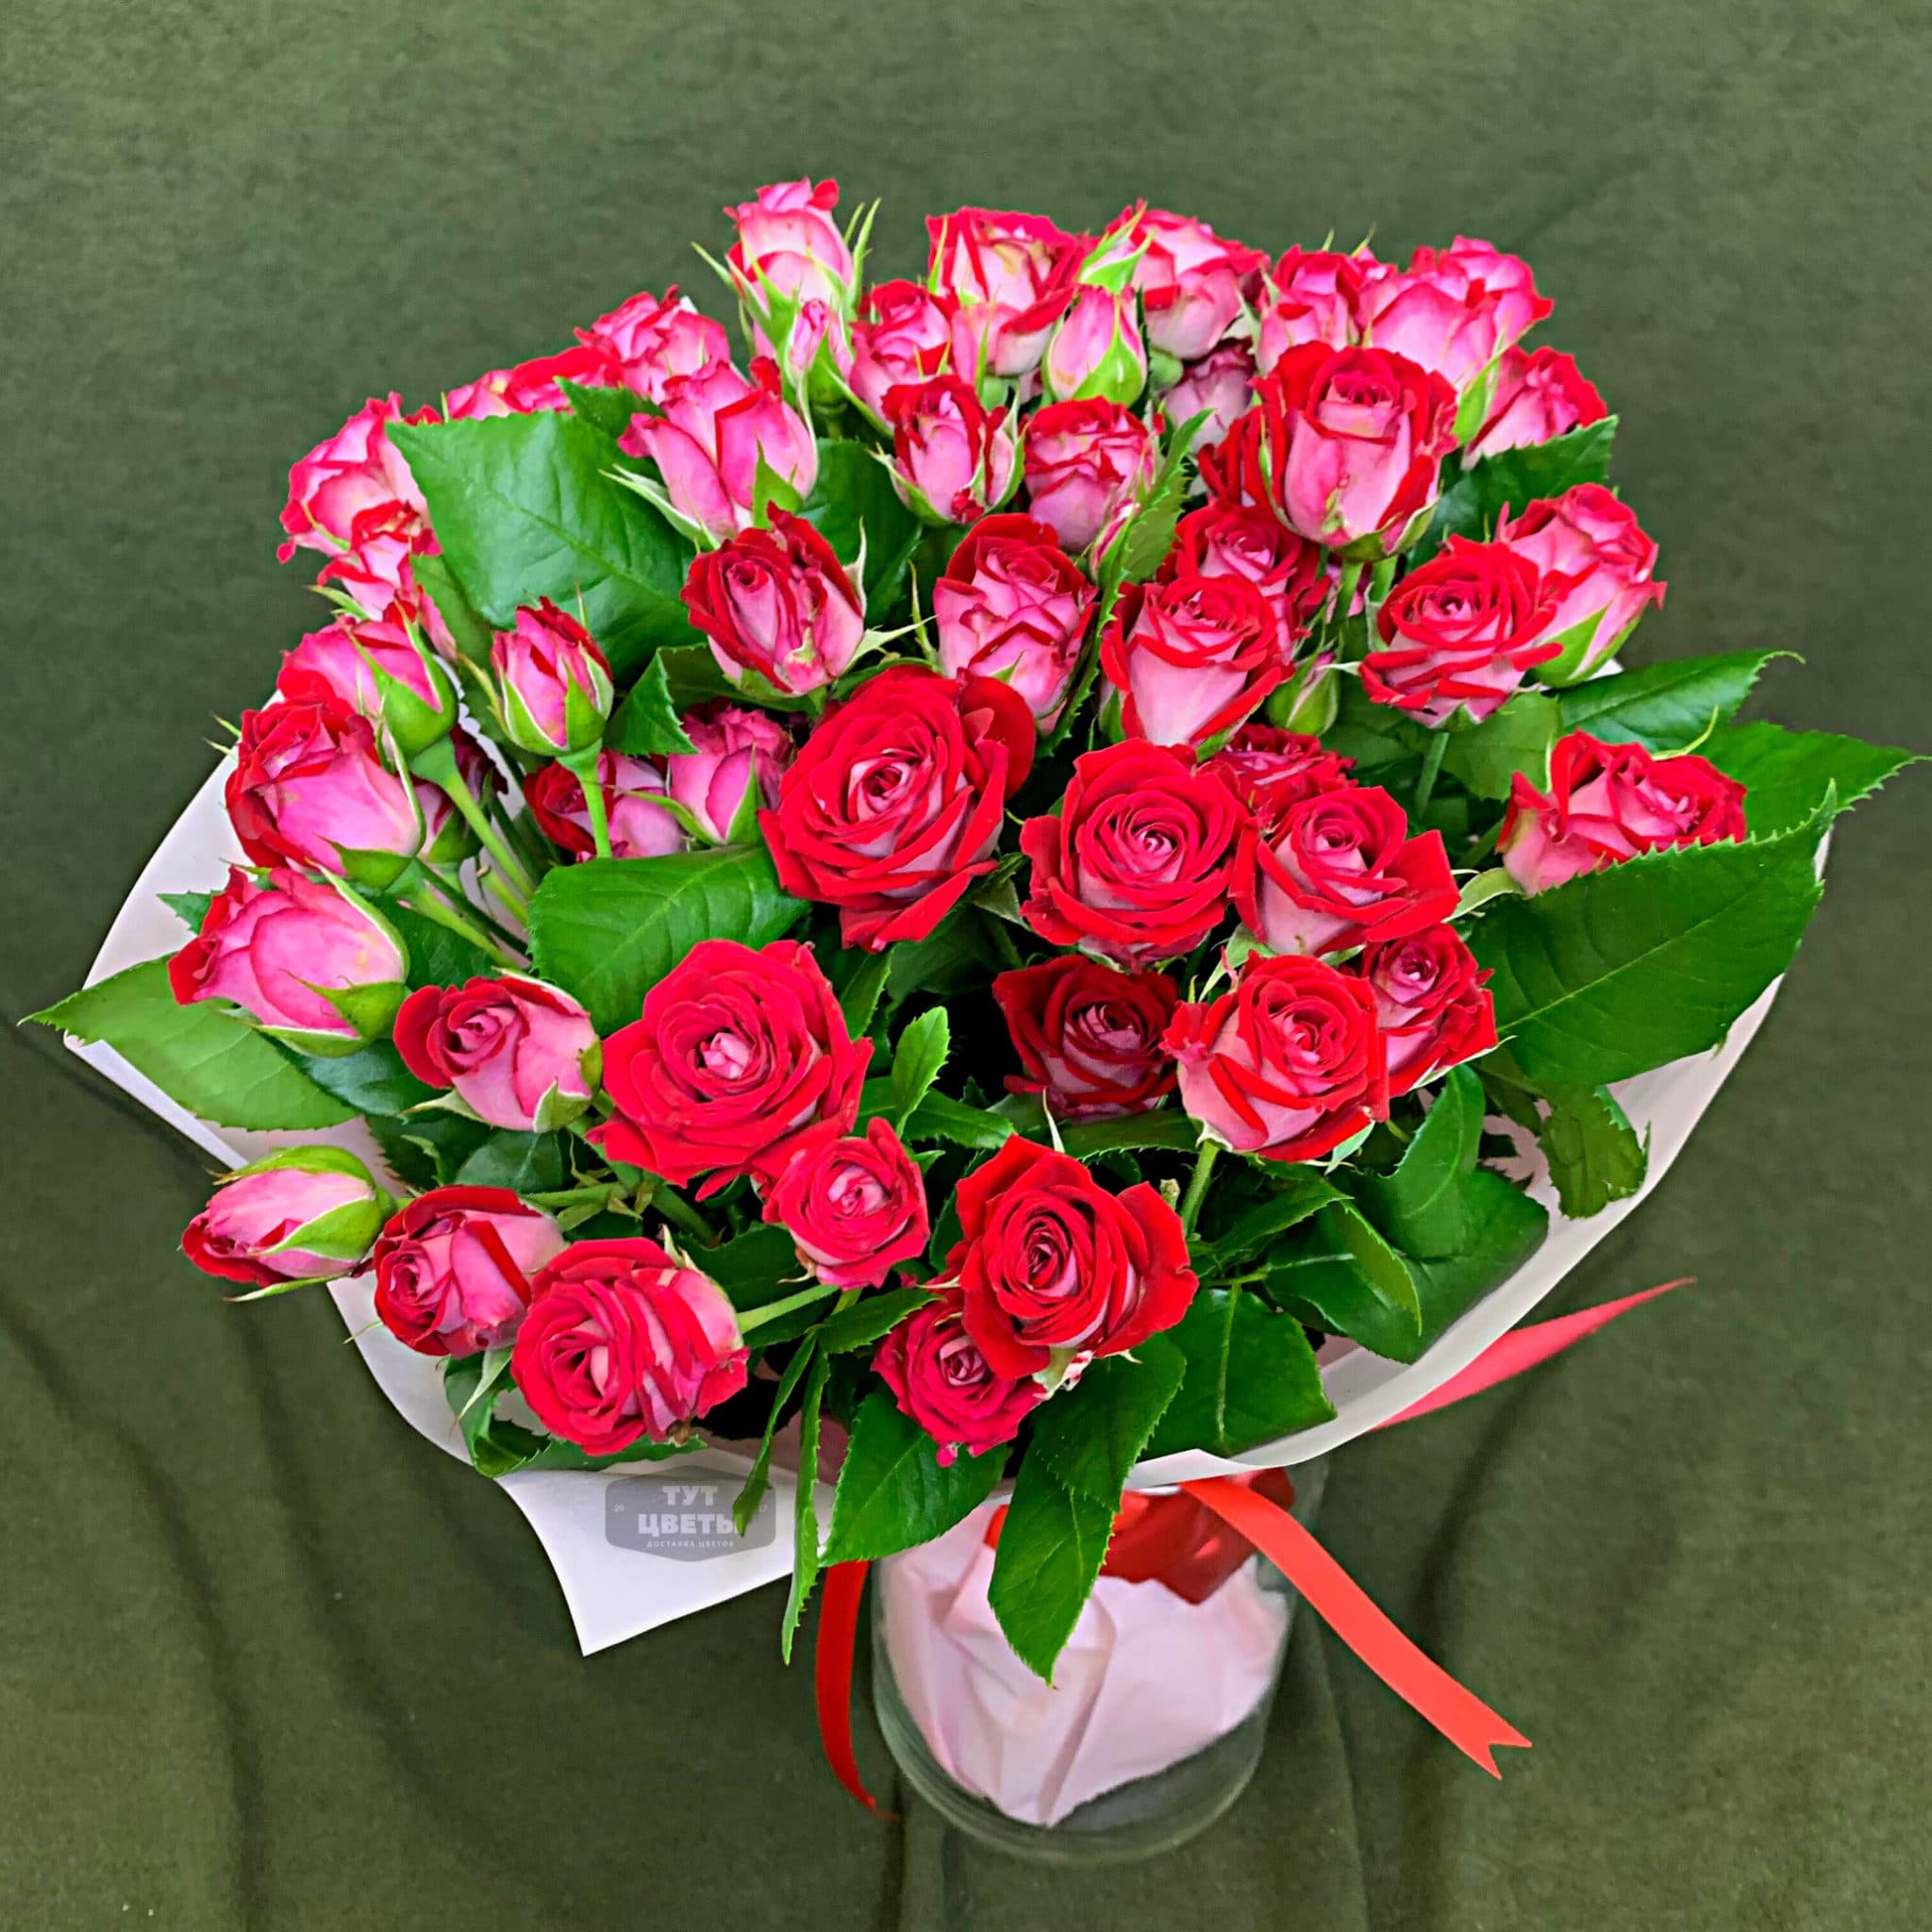 Заказать цветы с доставкой в иркутске недорого с фото